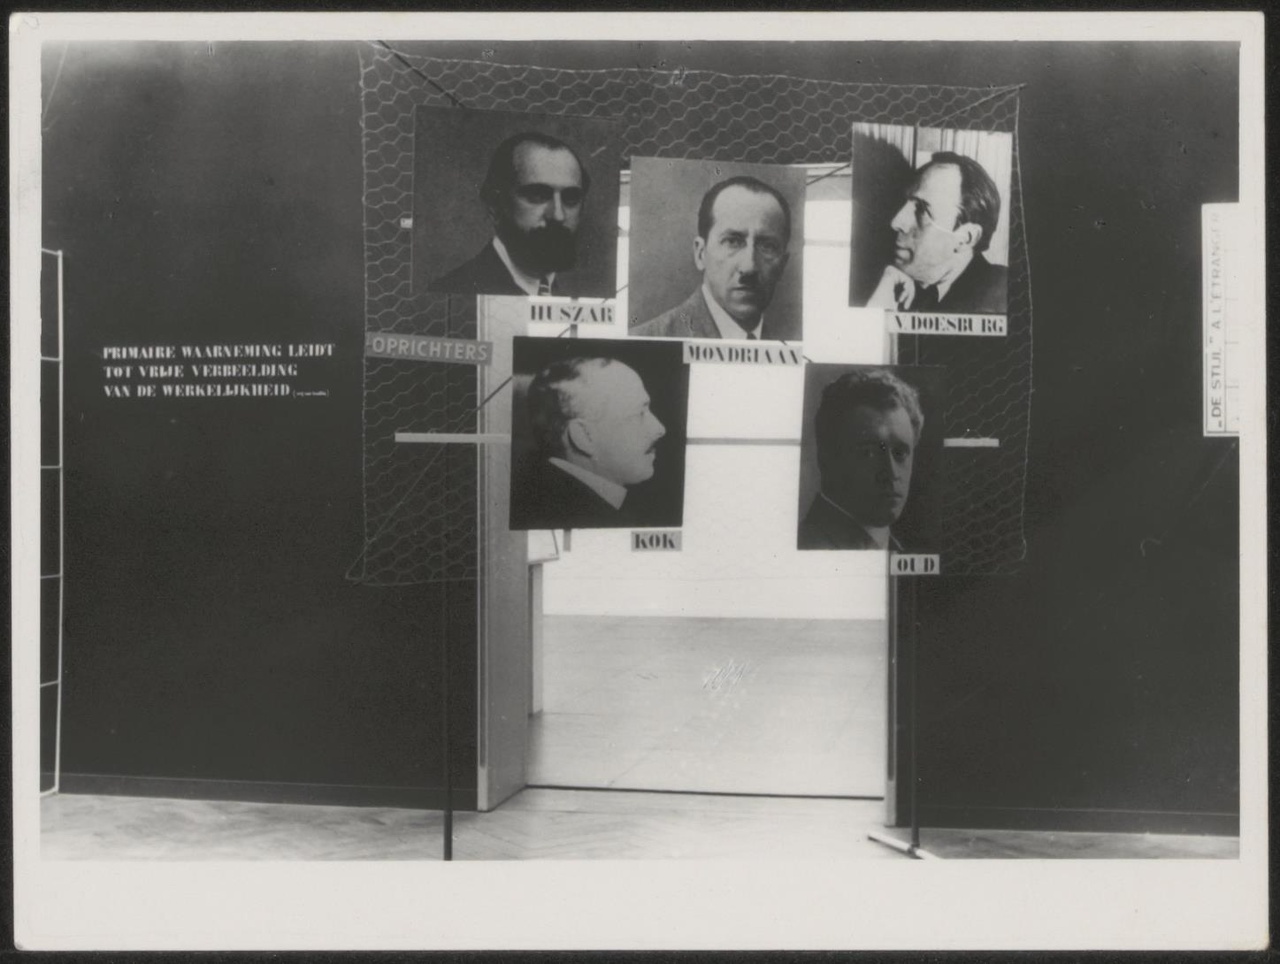 Afbeelding van tentoonstelling De Stijl SMA, 1951, zaal 4, portretten van de vijf oprichters